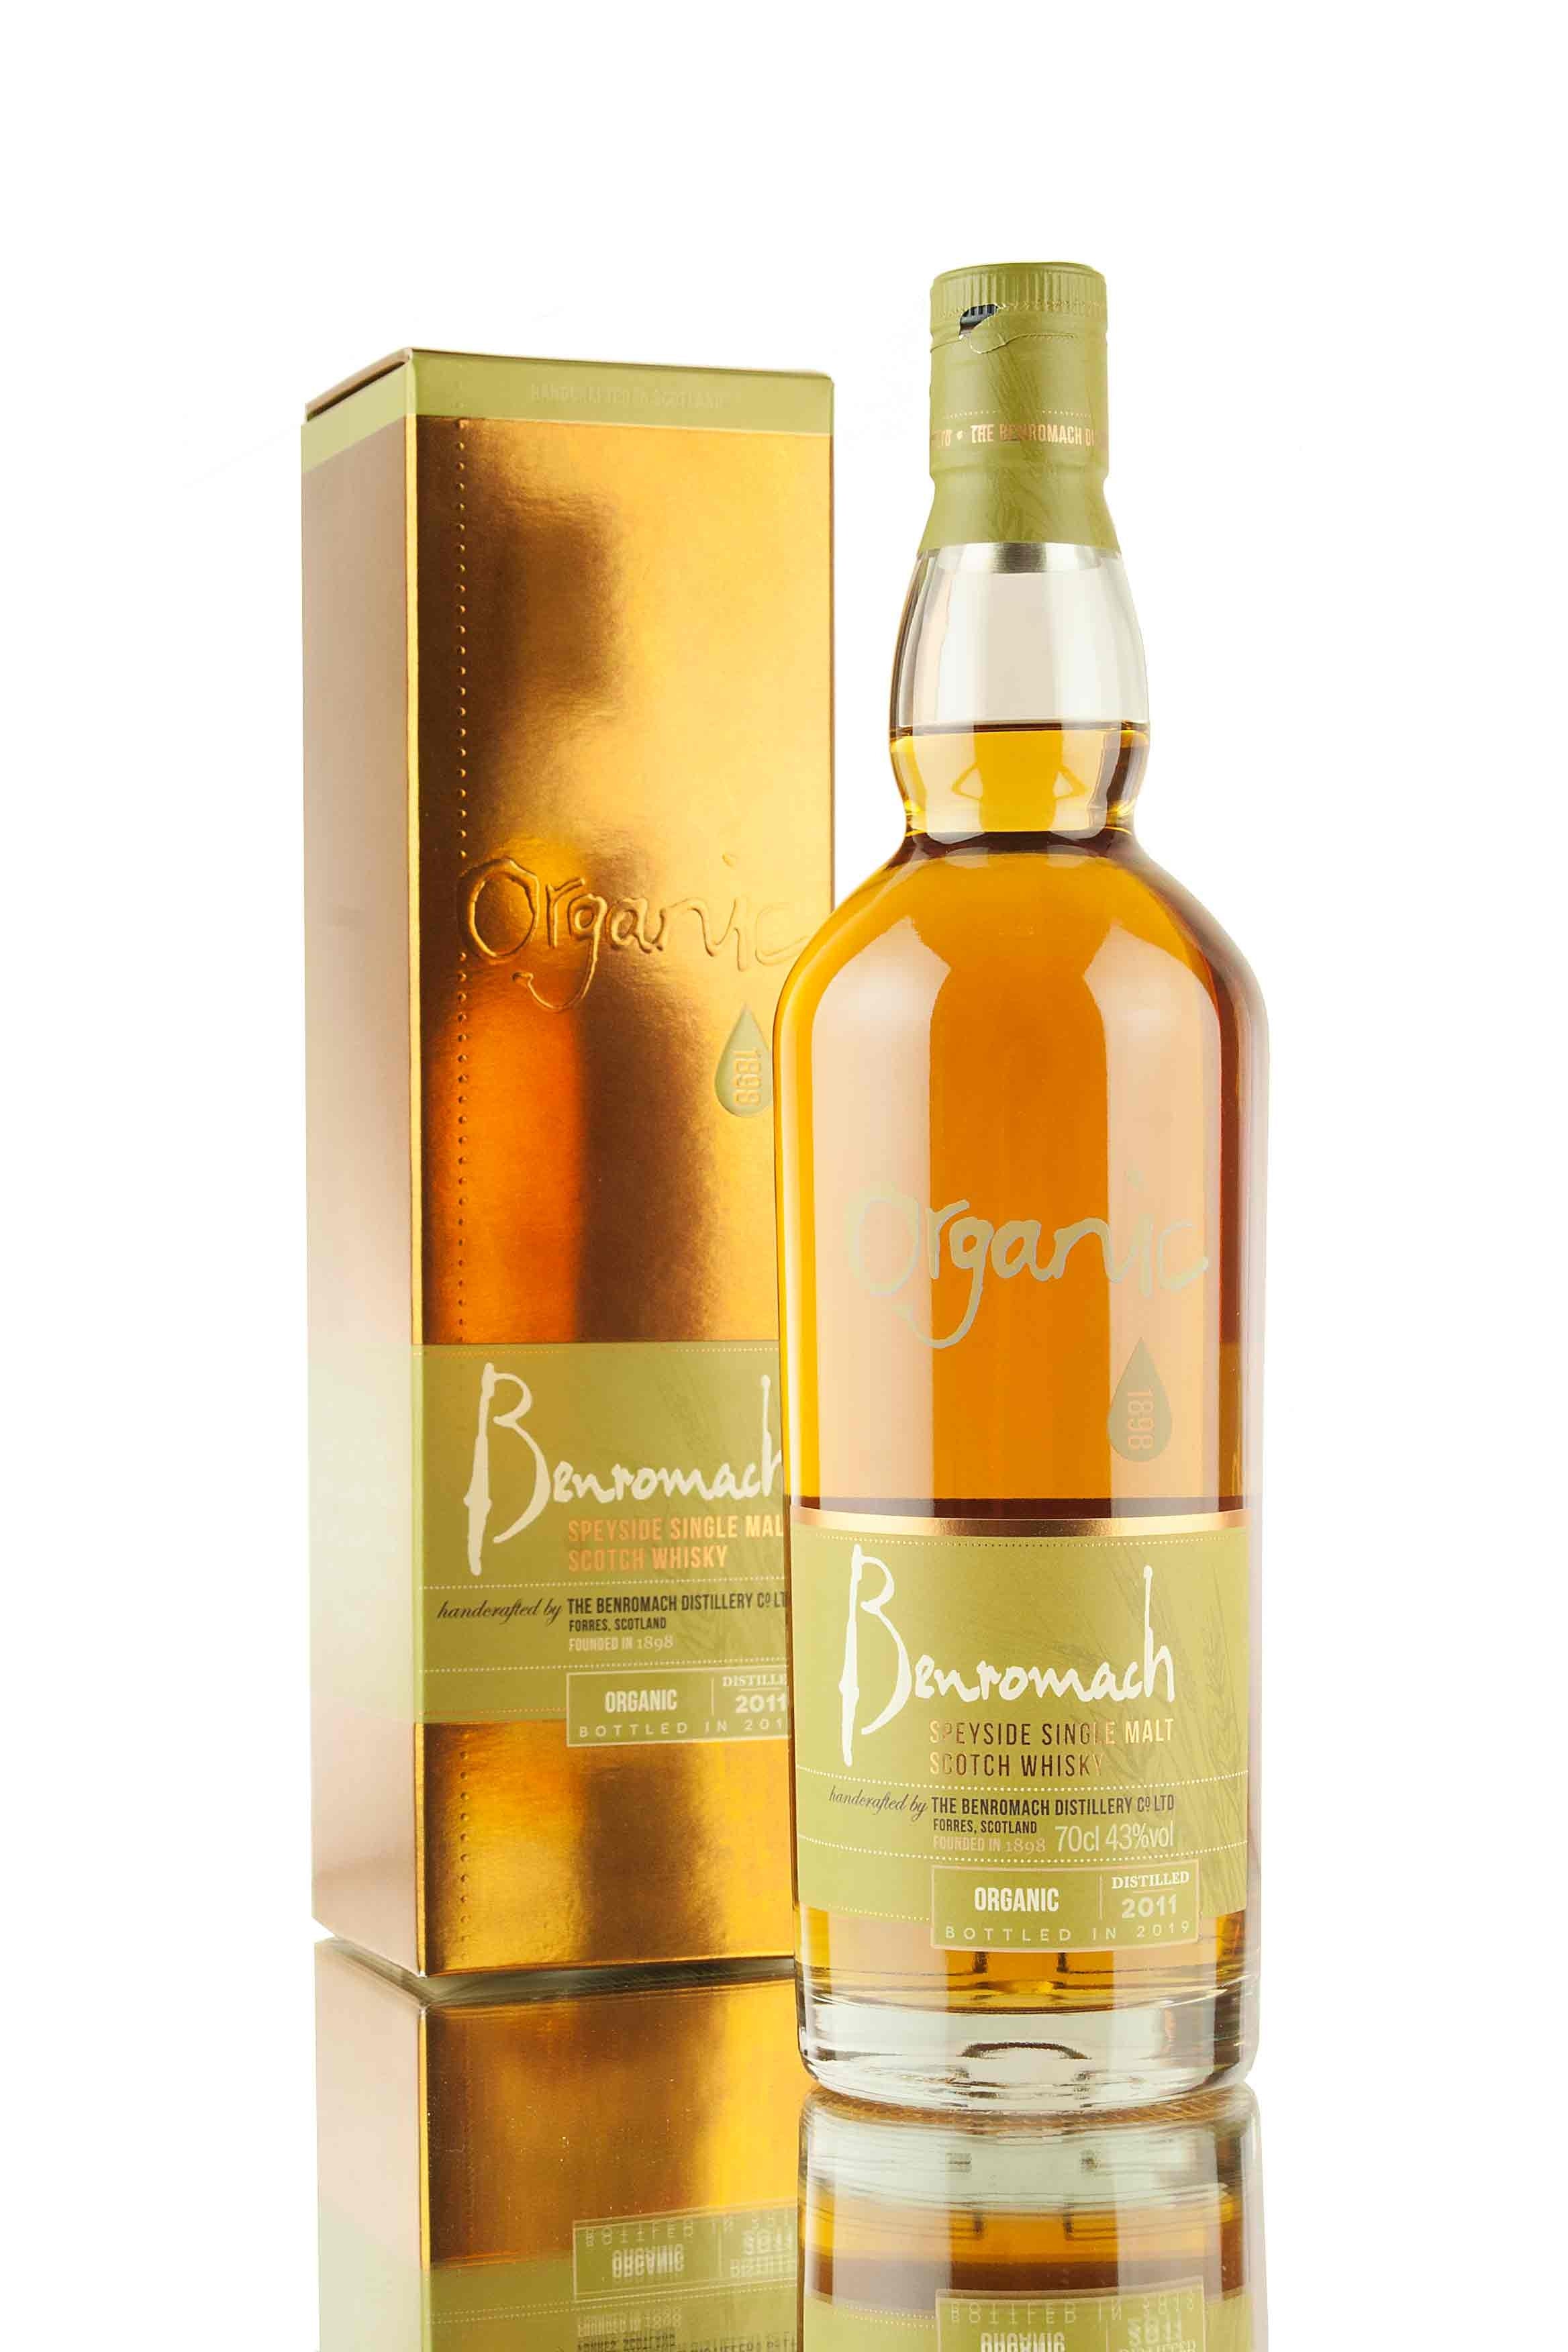 Benromach Organic 2011 | Bottled 2019